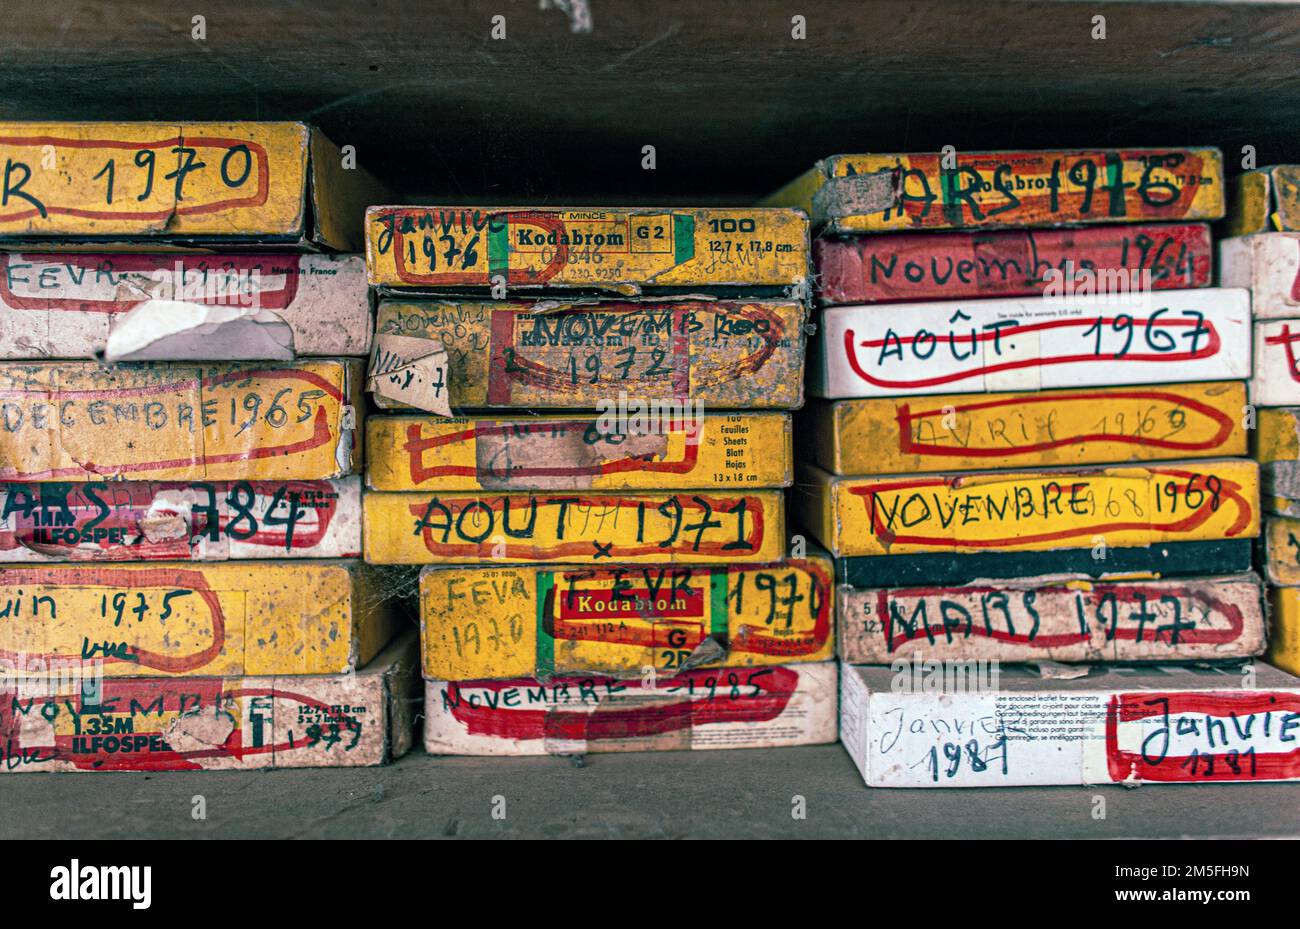 FAMOS fotografo Malick Sidibé scatole piene di negativi in Bamako, Mali, Africa occidentale. Foto Stock